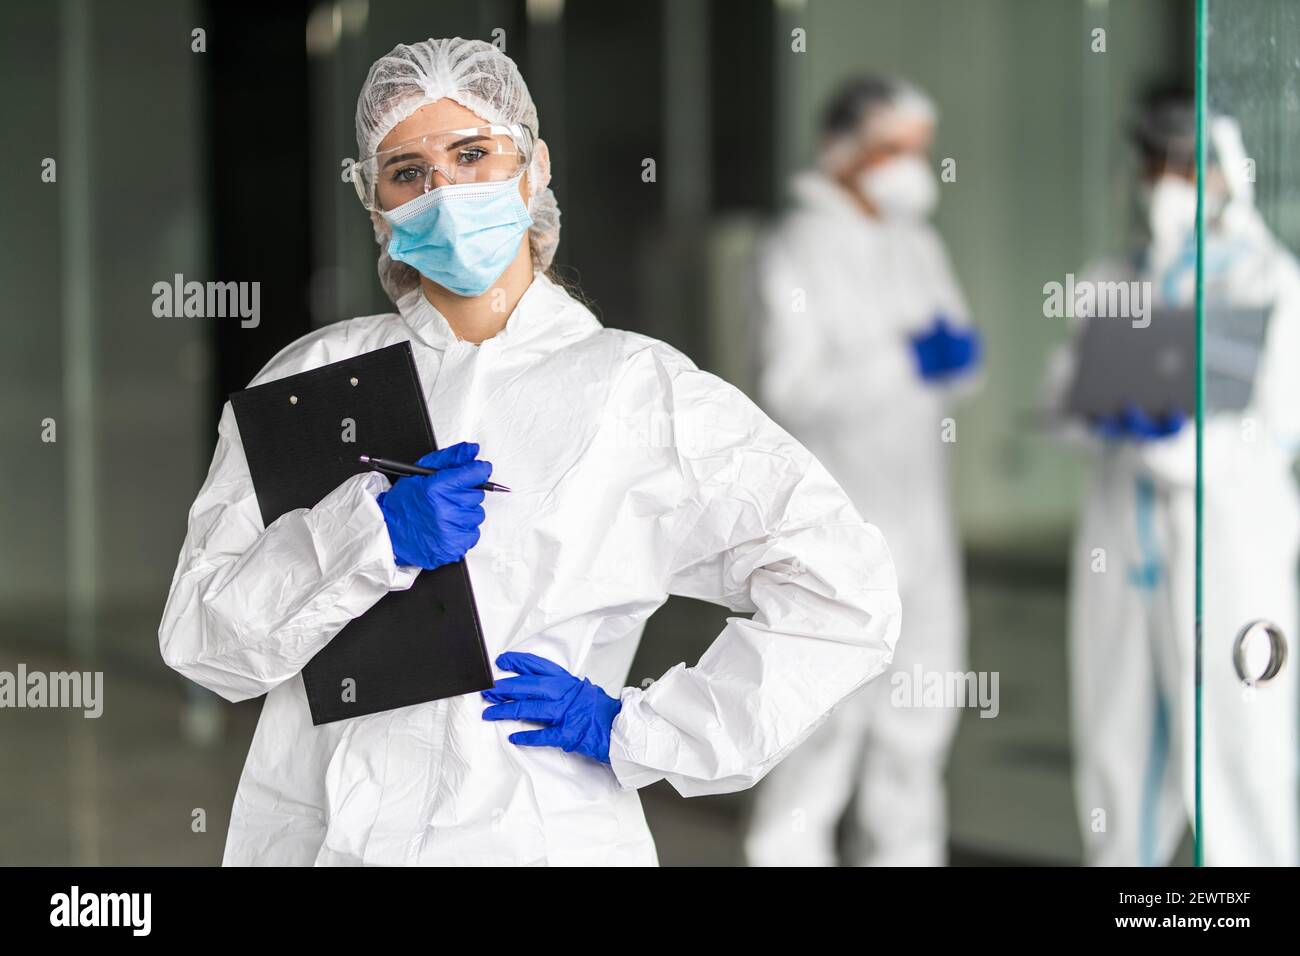 Empleados de control de enfermedades en ropa protectora durante la epidemia de coronavirus Coivd-19 en una clínica Foto de stock